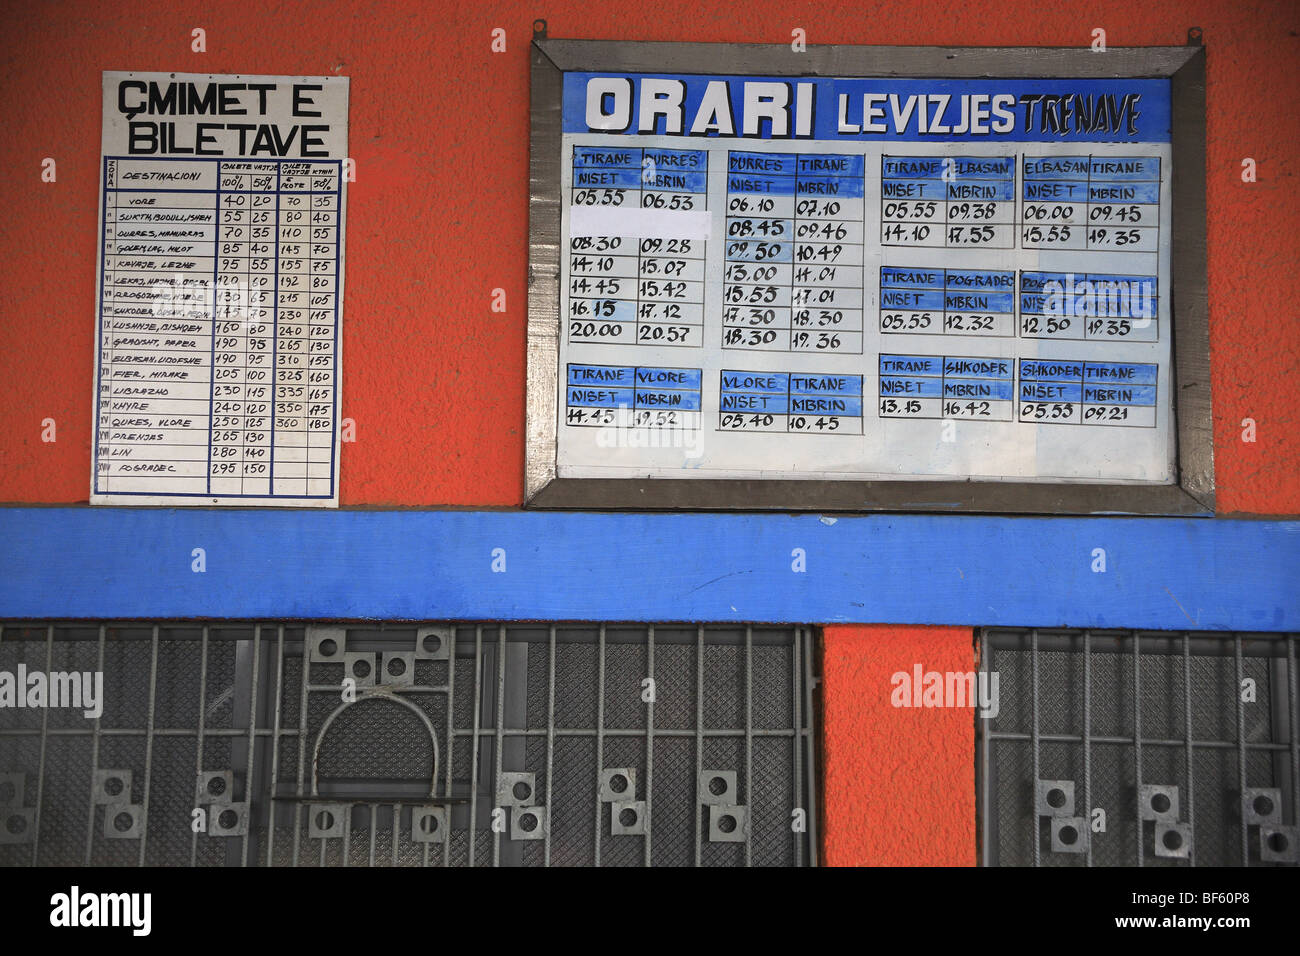 Visualizzazione delle tabelle dei tempi e prezzi dei biglietti presso la biglietteria di Tirana stazione ferroviaria, Albania Foto Stock